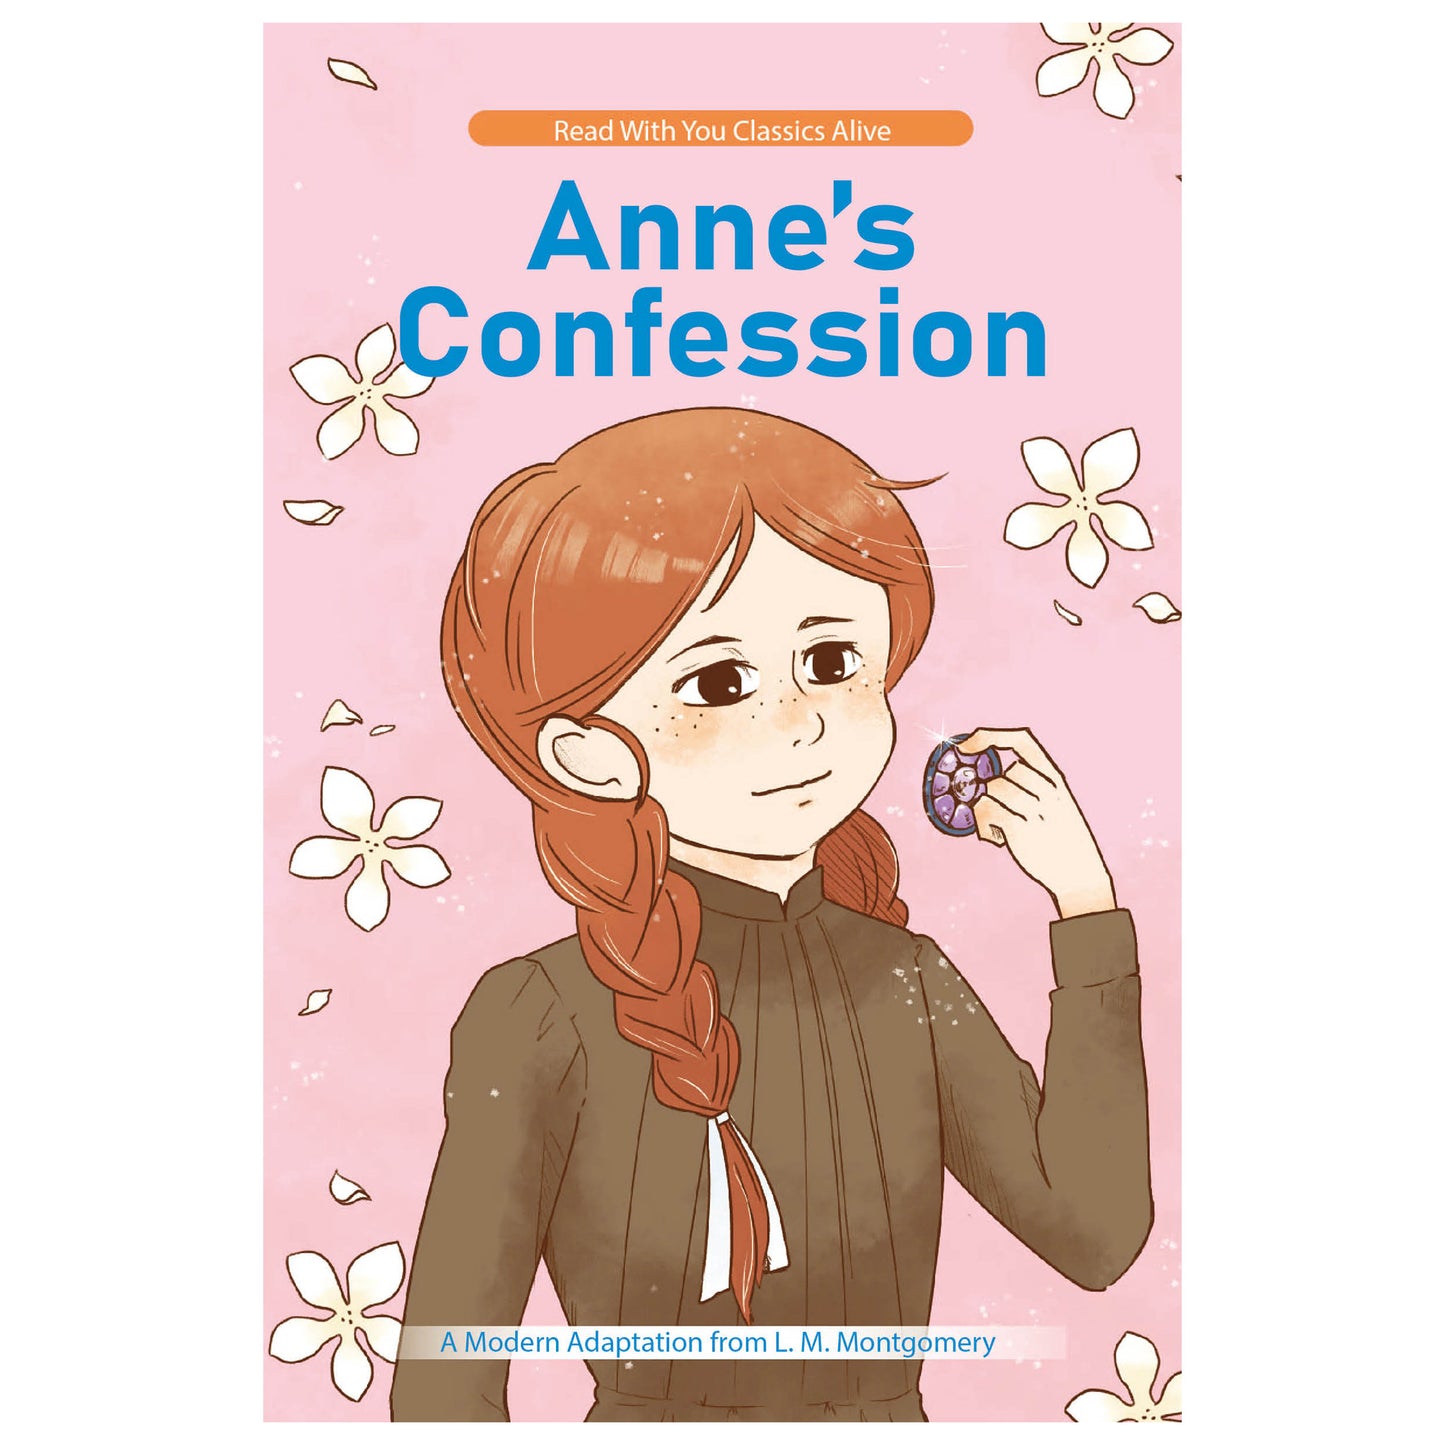 Anne’s Confession